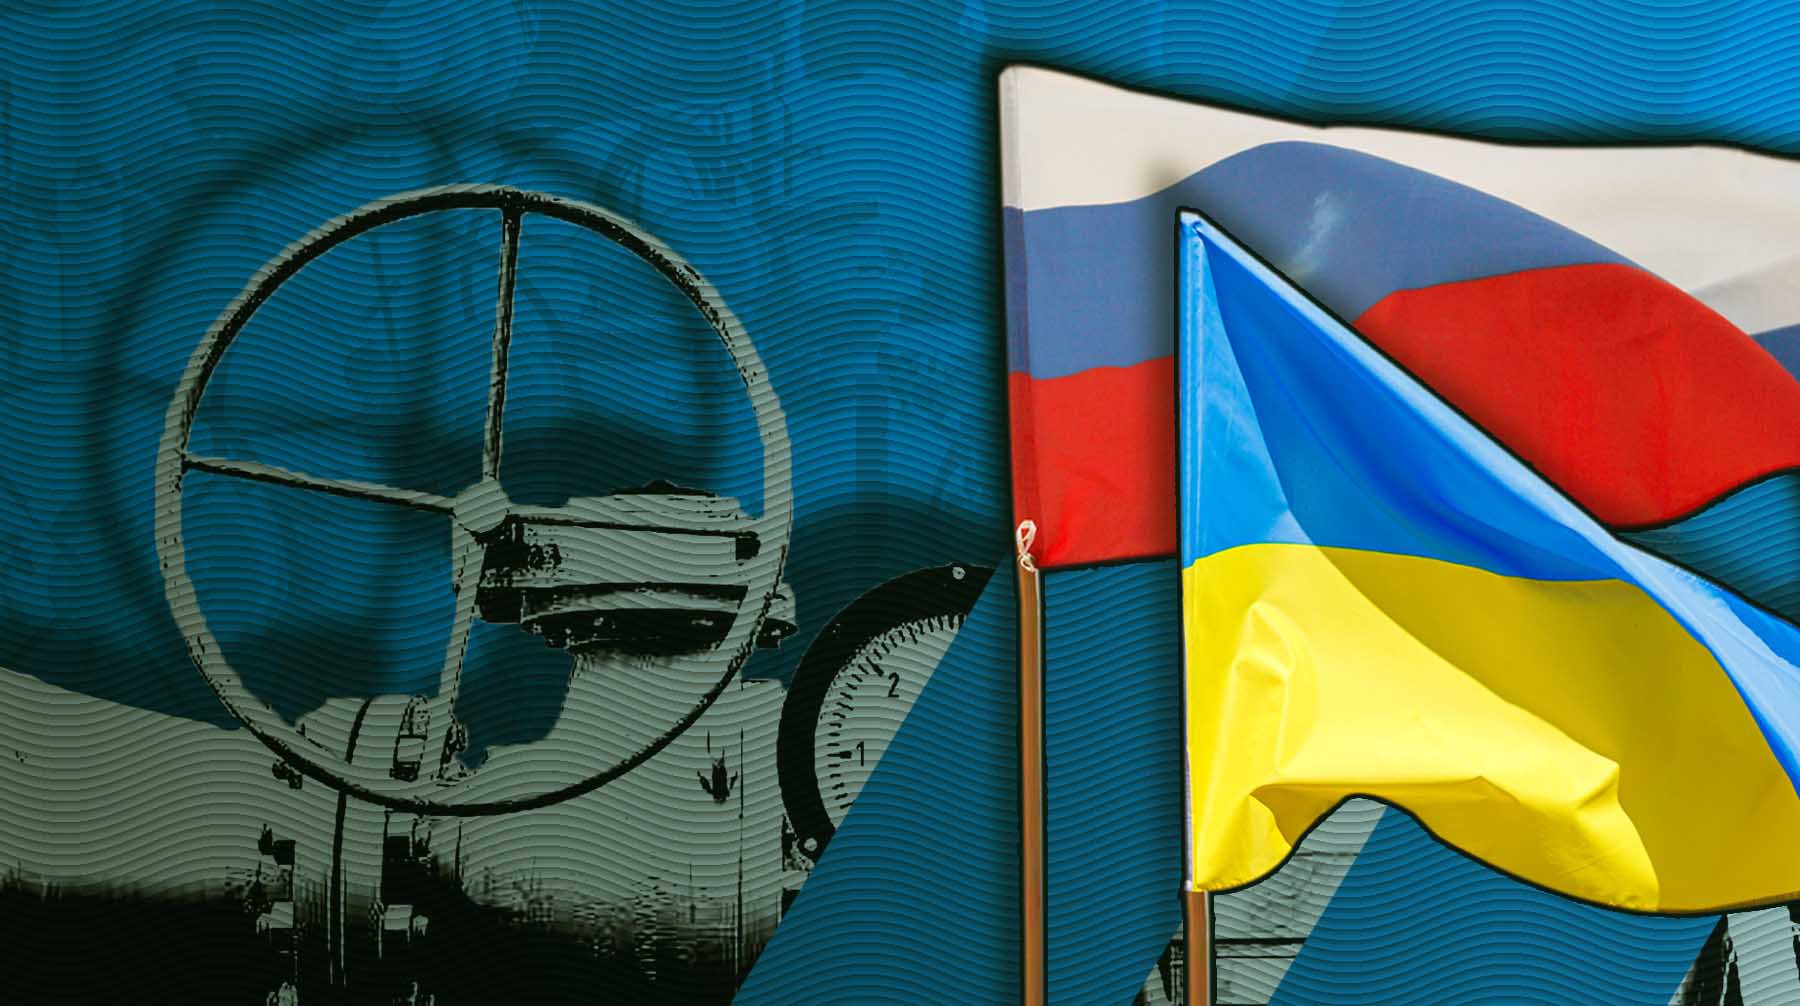 Dailystorm - Газ всему голова. В РАН и МГИМО объяснили, почему Украина сохраняет транзит российского топлива в Европу